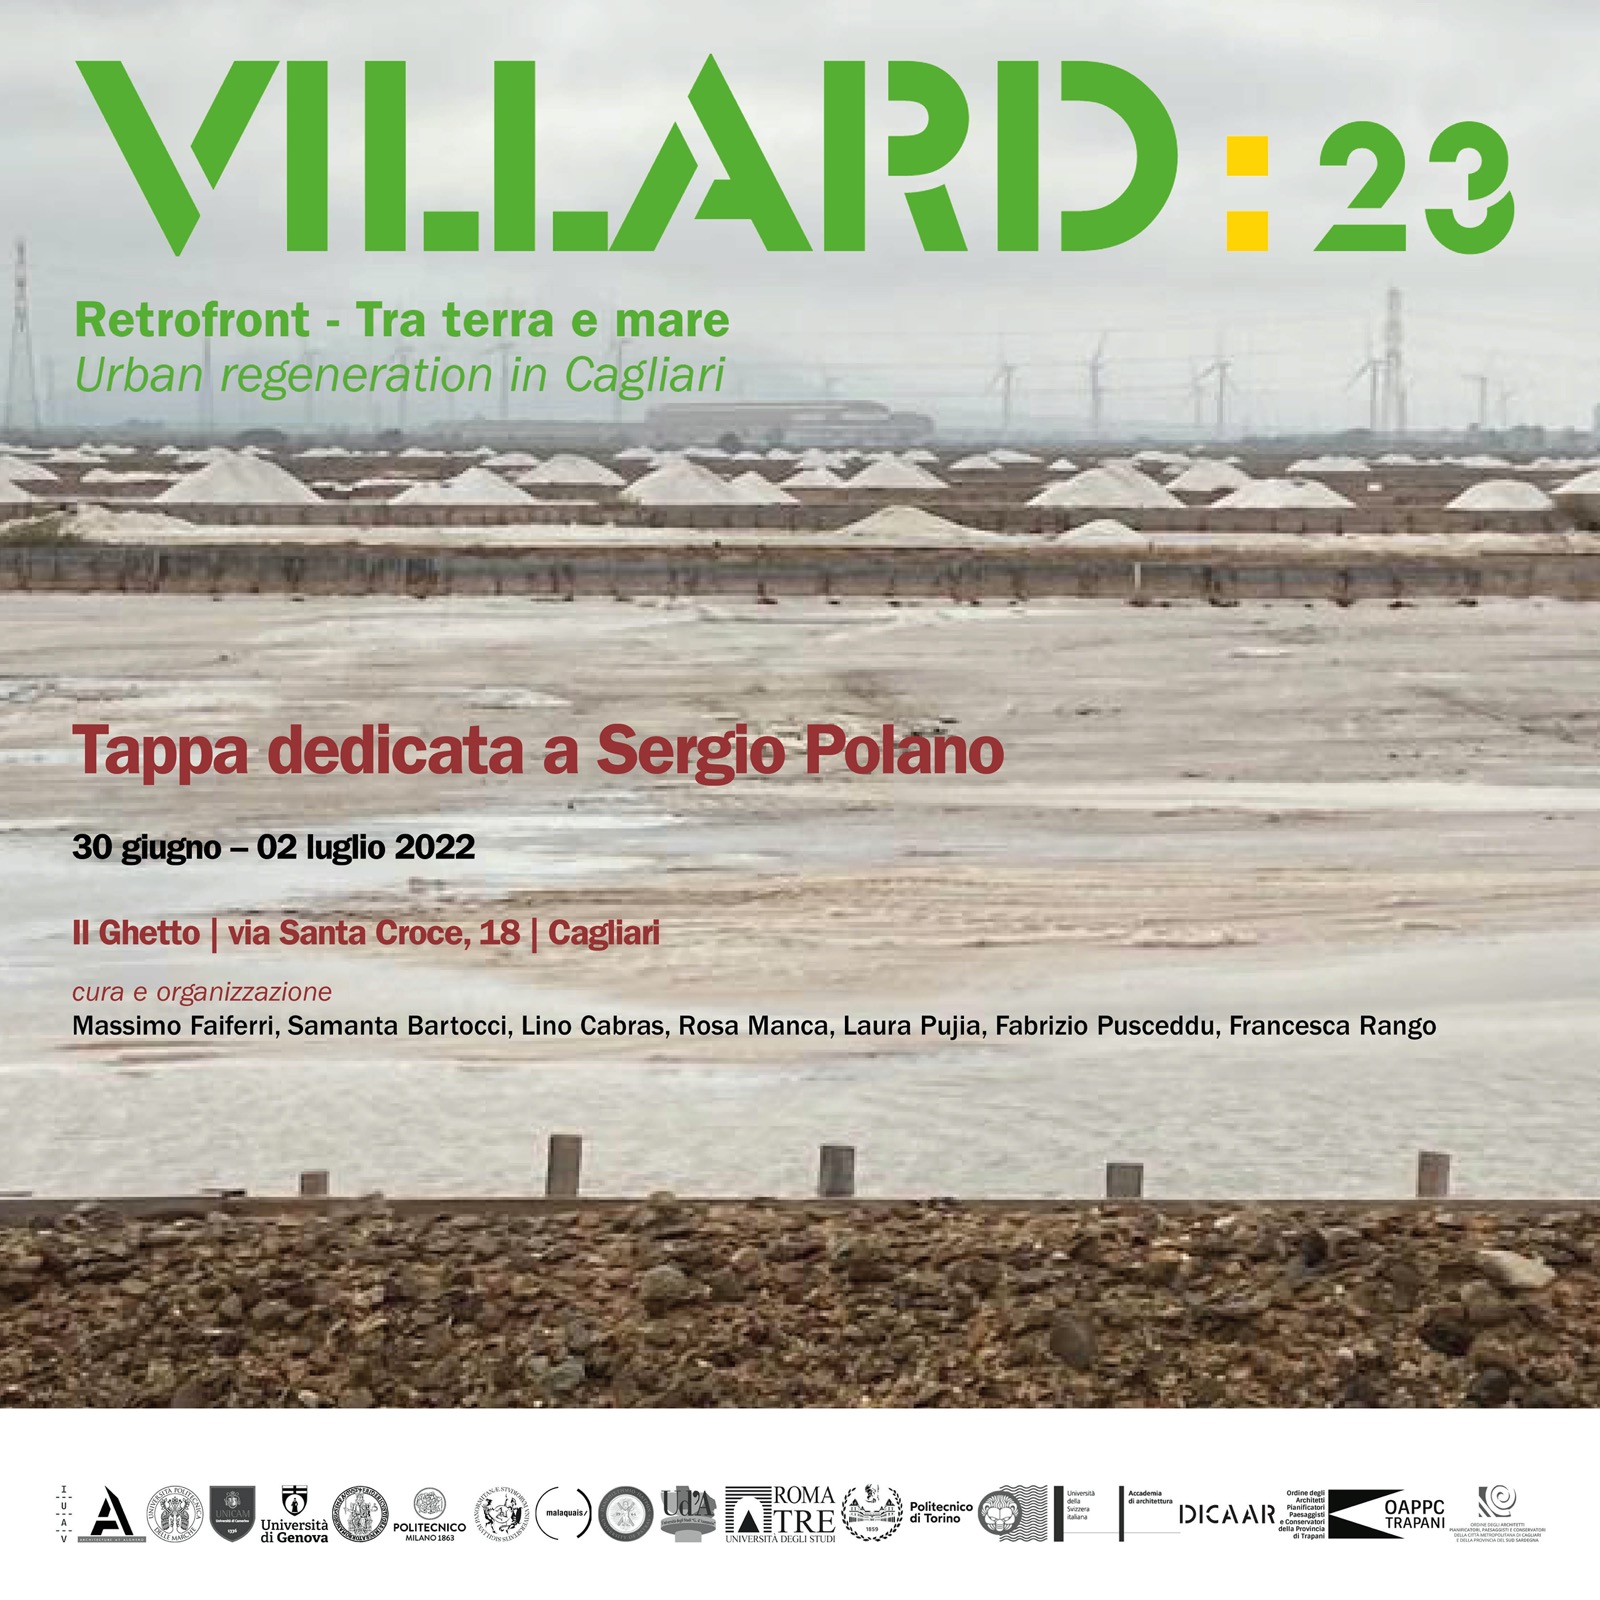 VILLARD 23